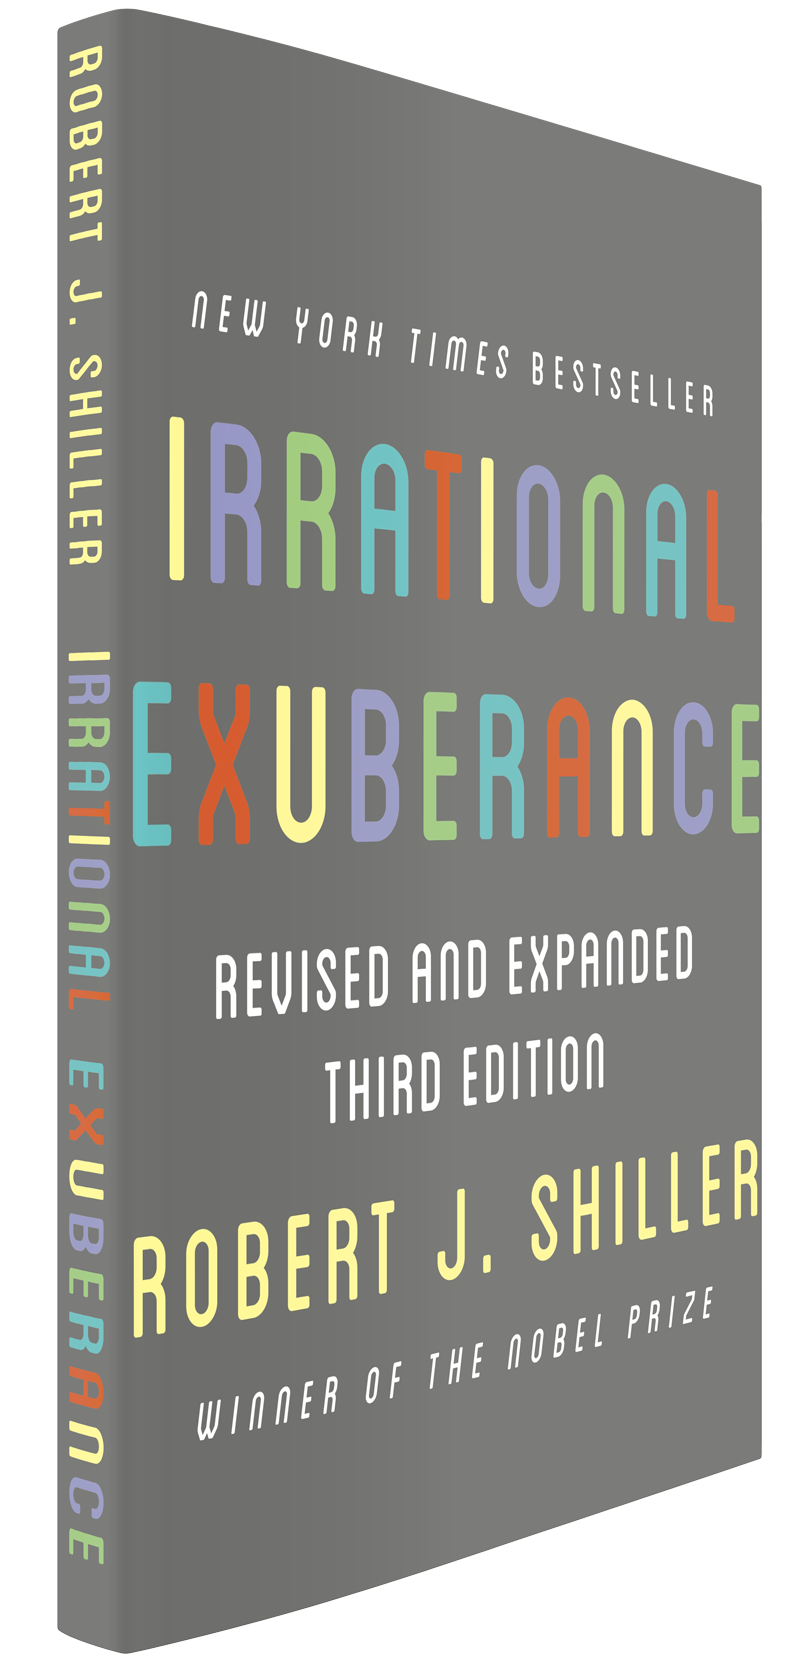 Irrational Exuberance – Robert J. Shiller